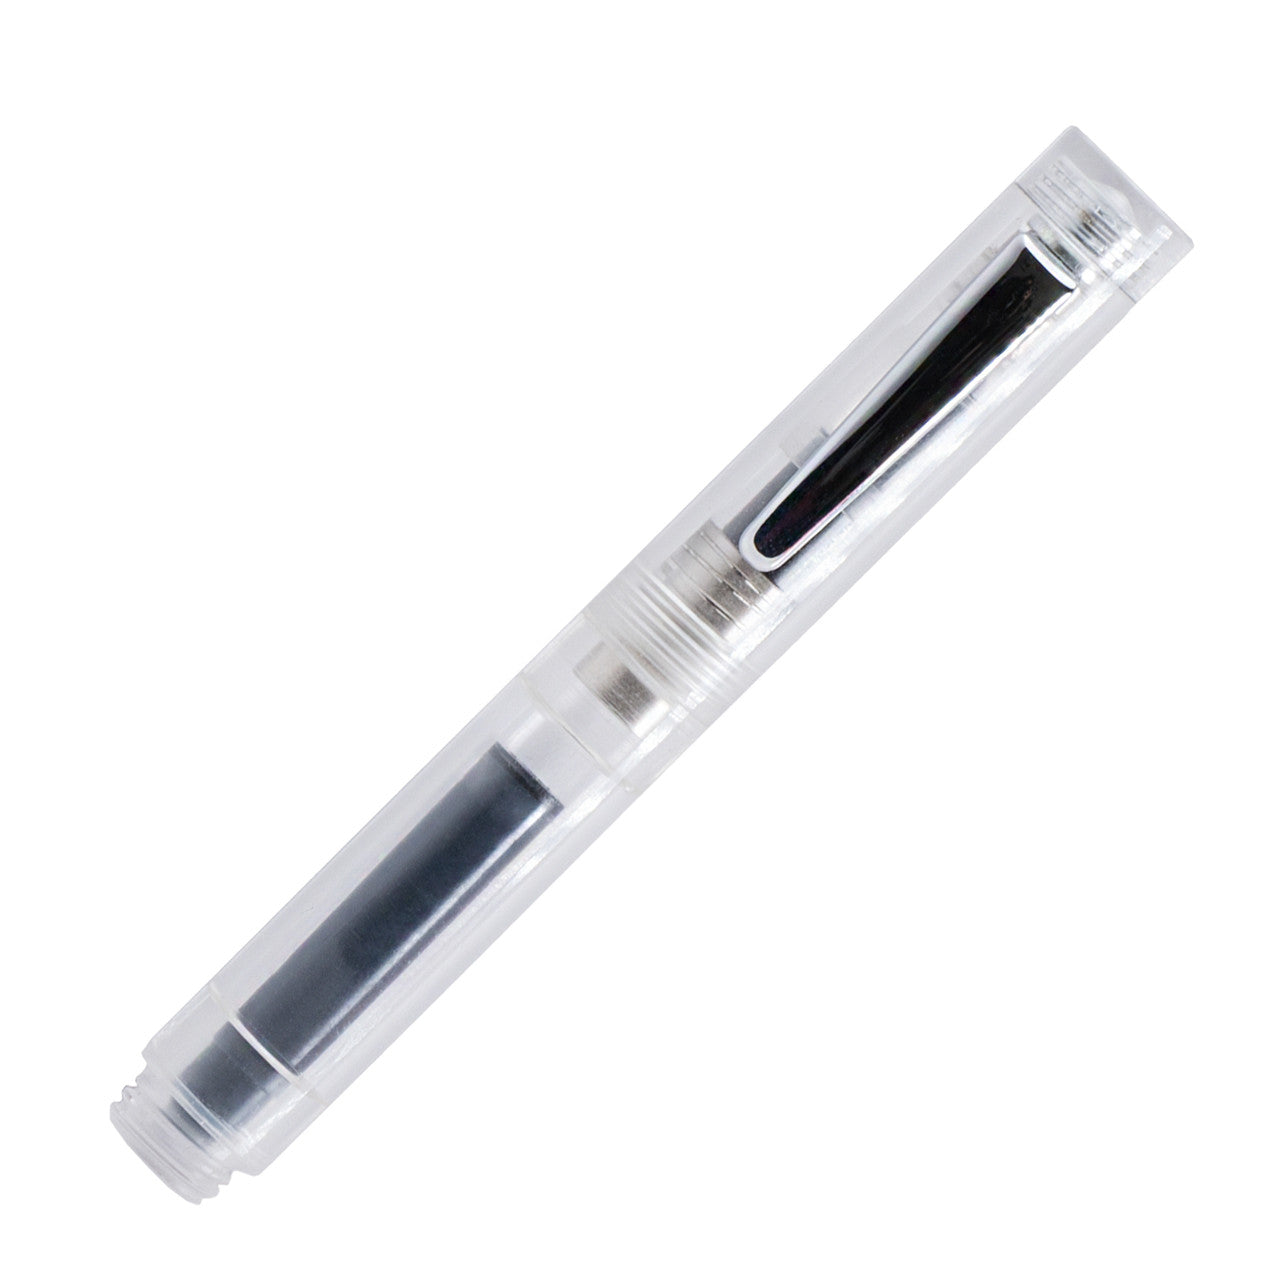 Monteverde MVP Fountain Pen - Diamond Clear